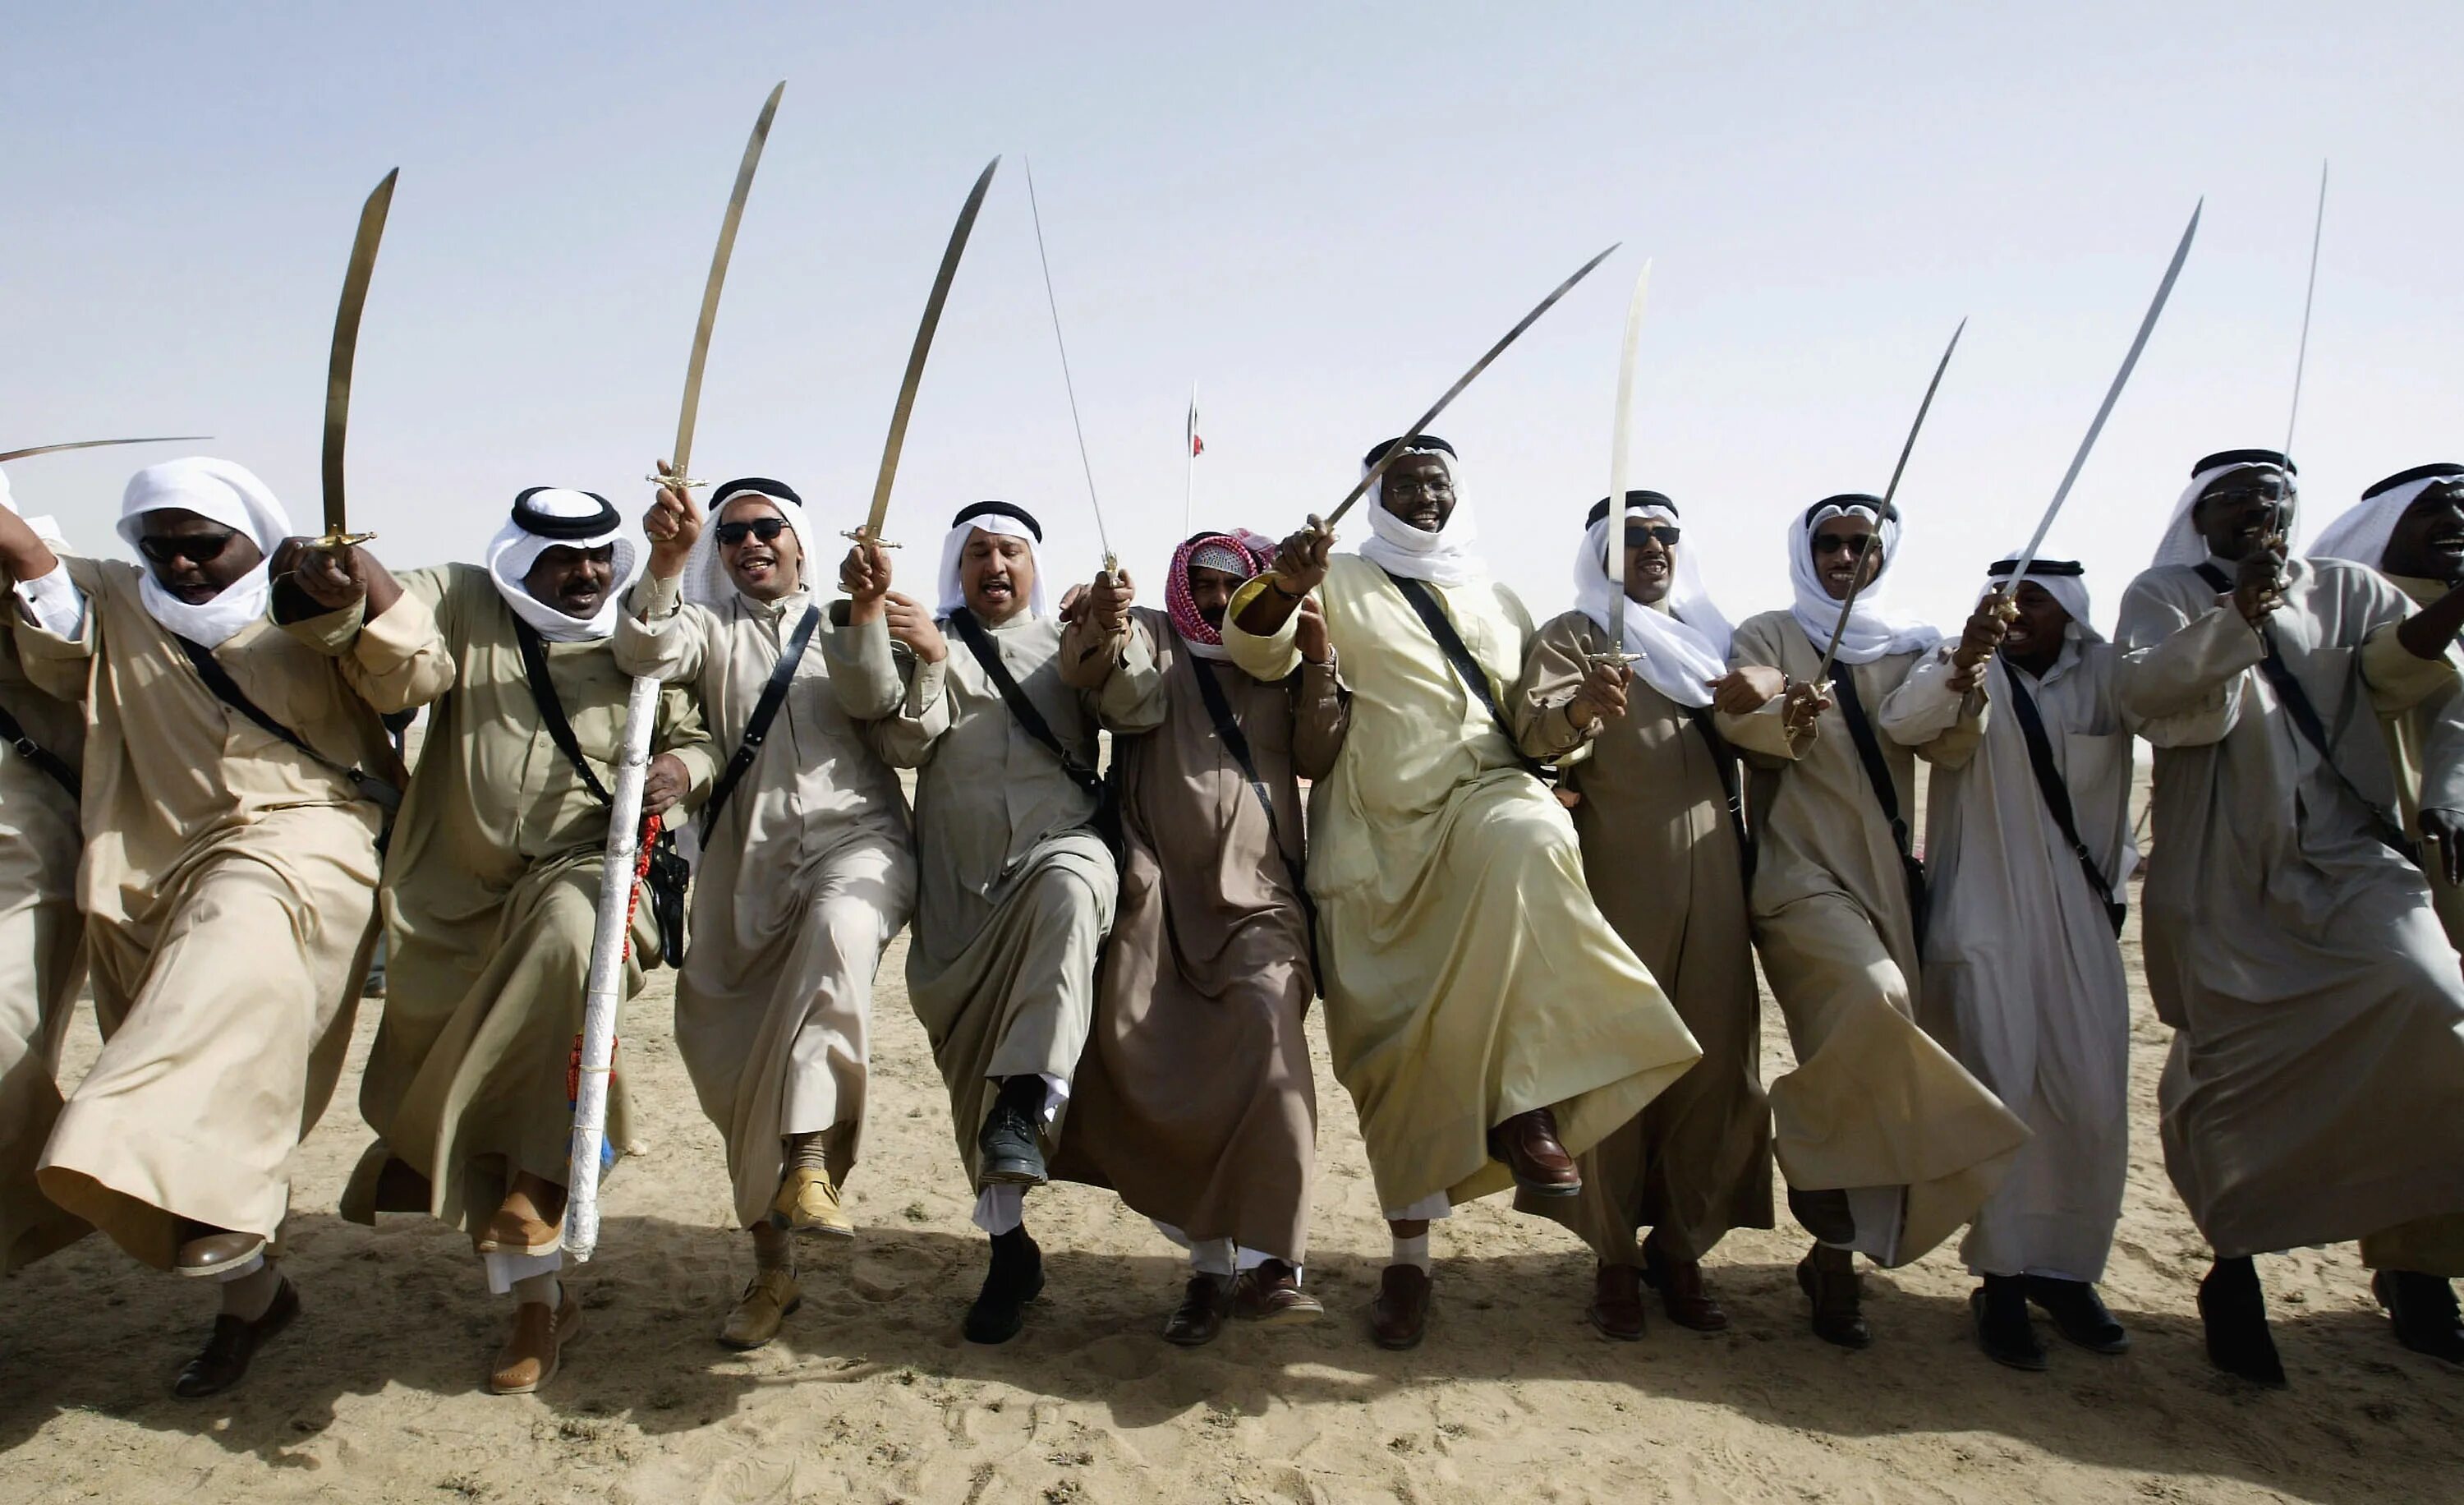 Верхняя одежда бедуинов 6 букв. Танцы бедуинов. Оружие бедуинов. Войны бедуинов. Араб с саблей.